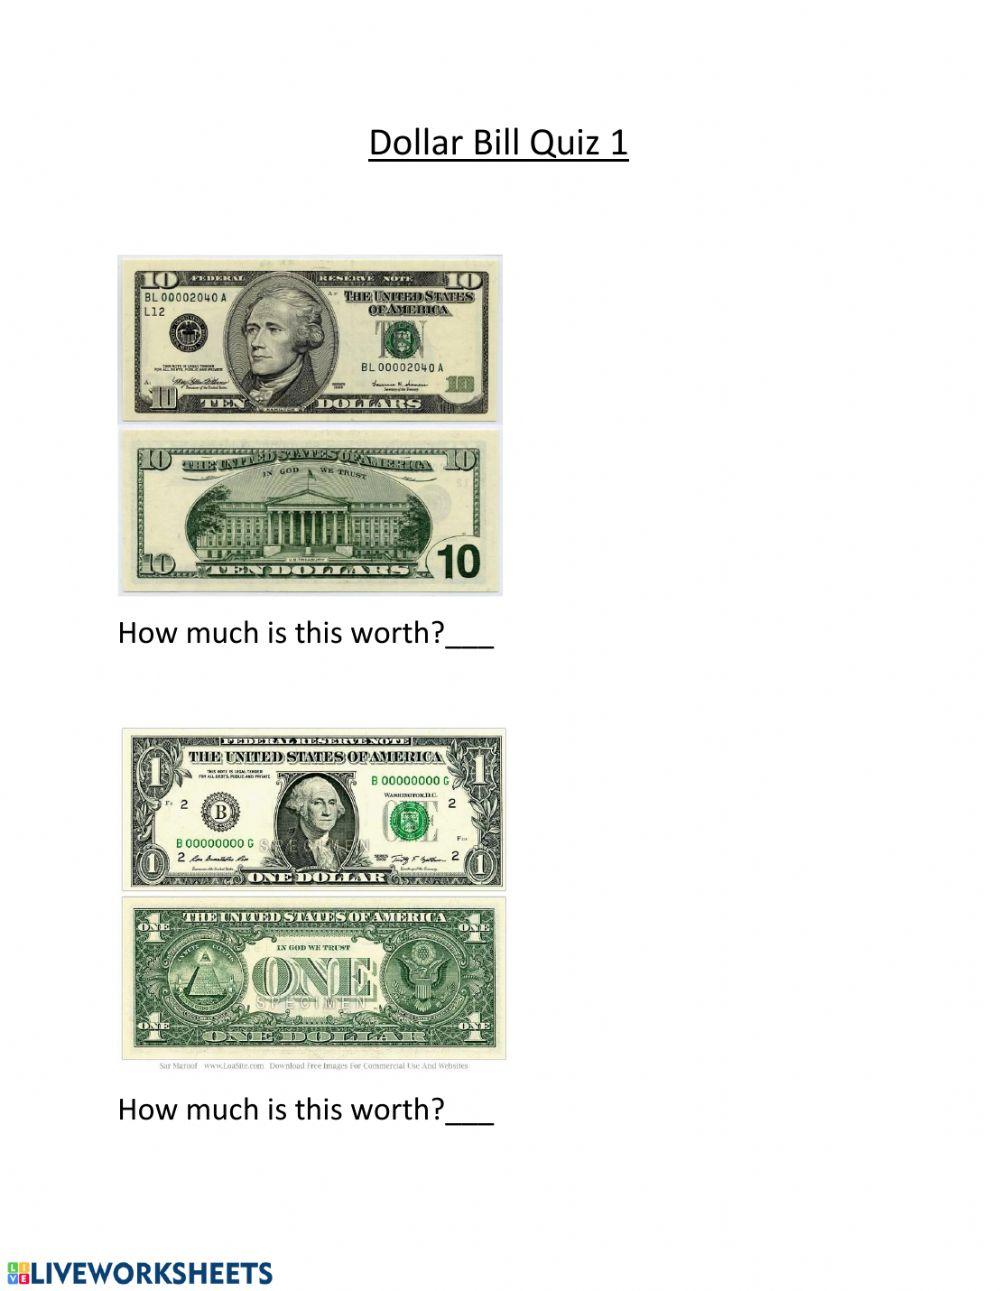 Dollar Bill Quiz 1